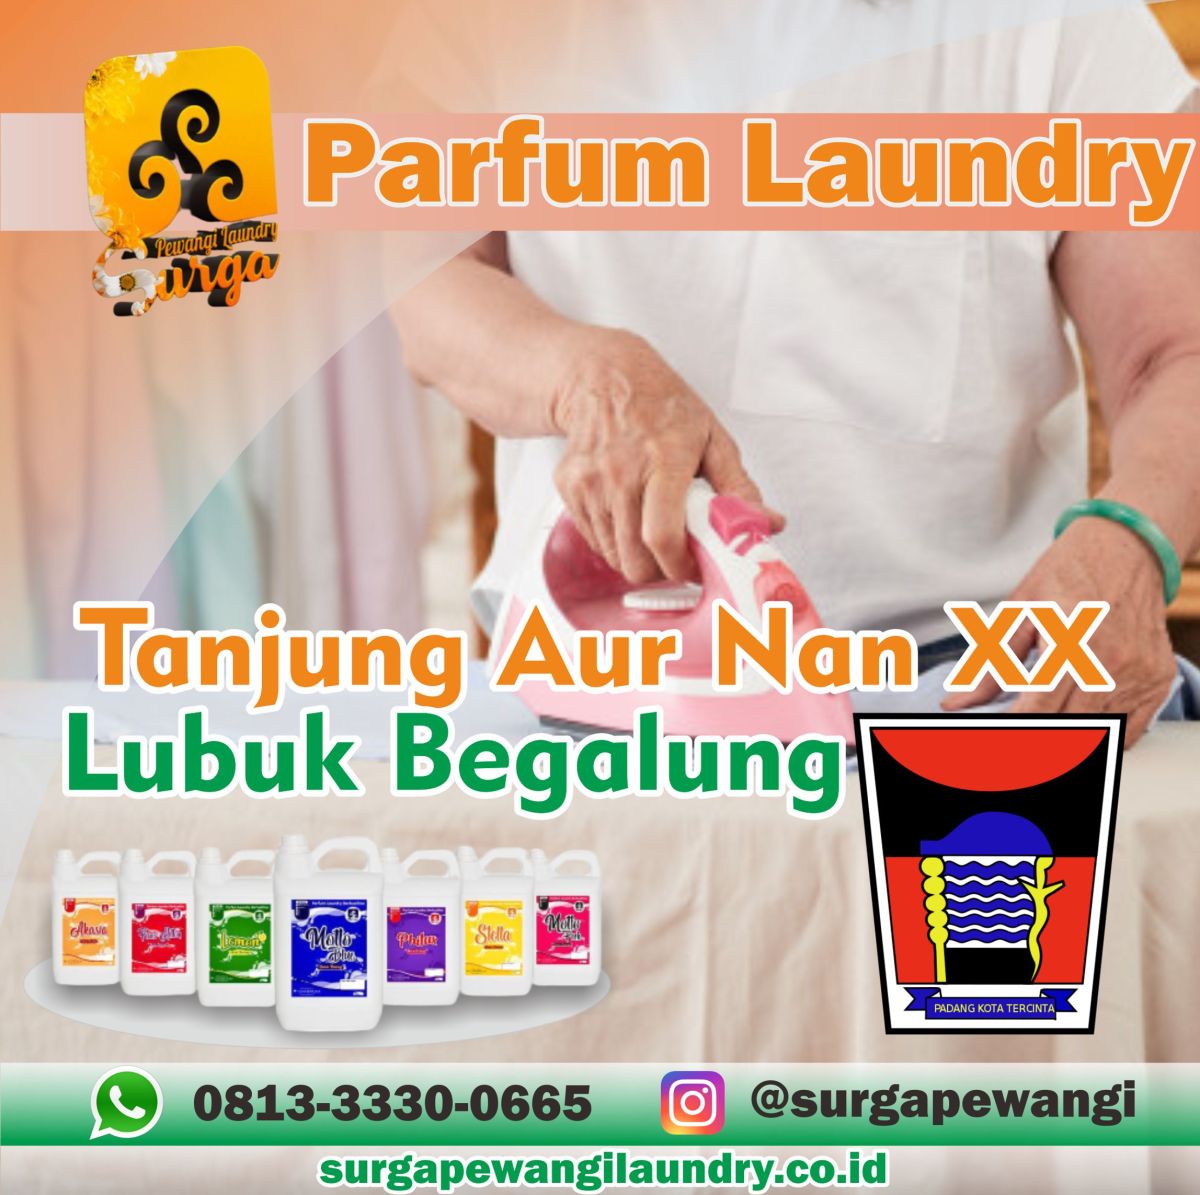 Parfum Laundry Tanah Sirah Piai Nan XX, Lubuk Begalung